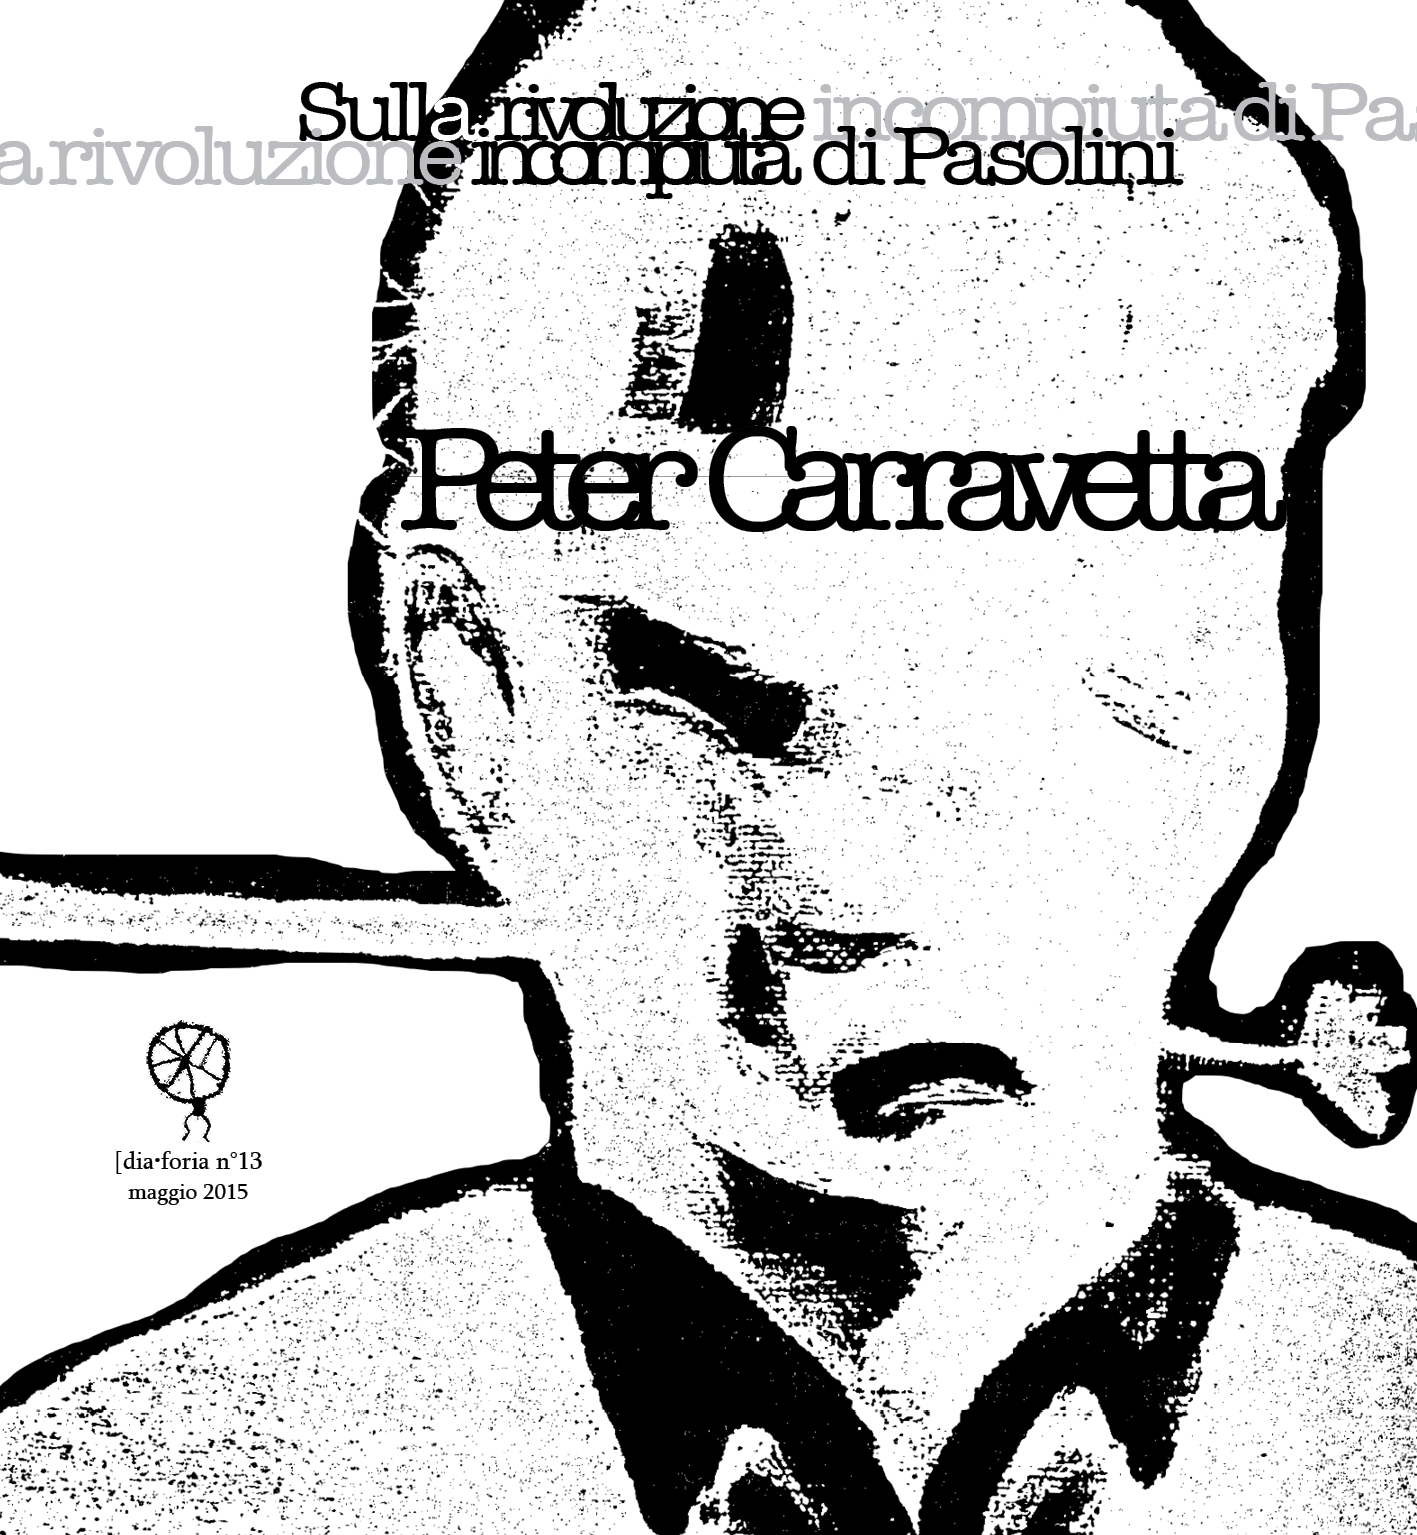 013 Peter Carravetta - Sulla rivoluzione incompiuta di Pasolini